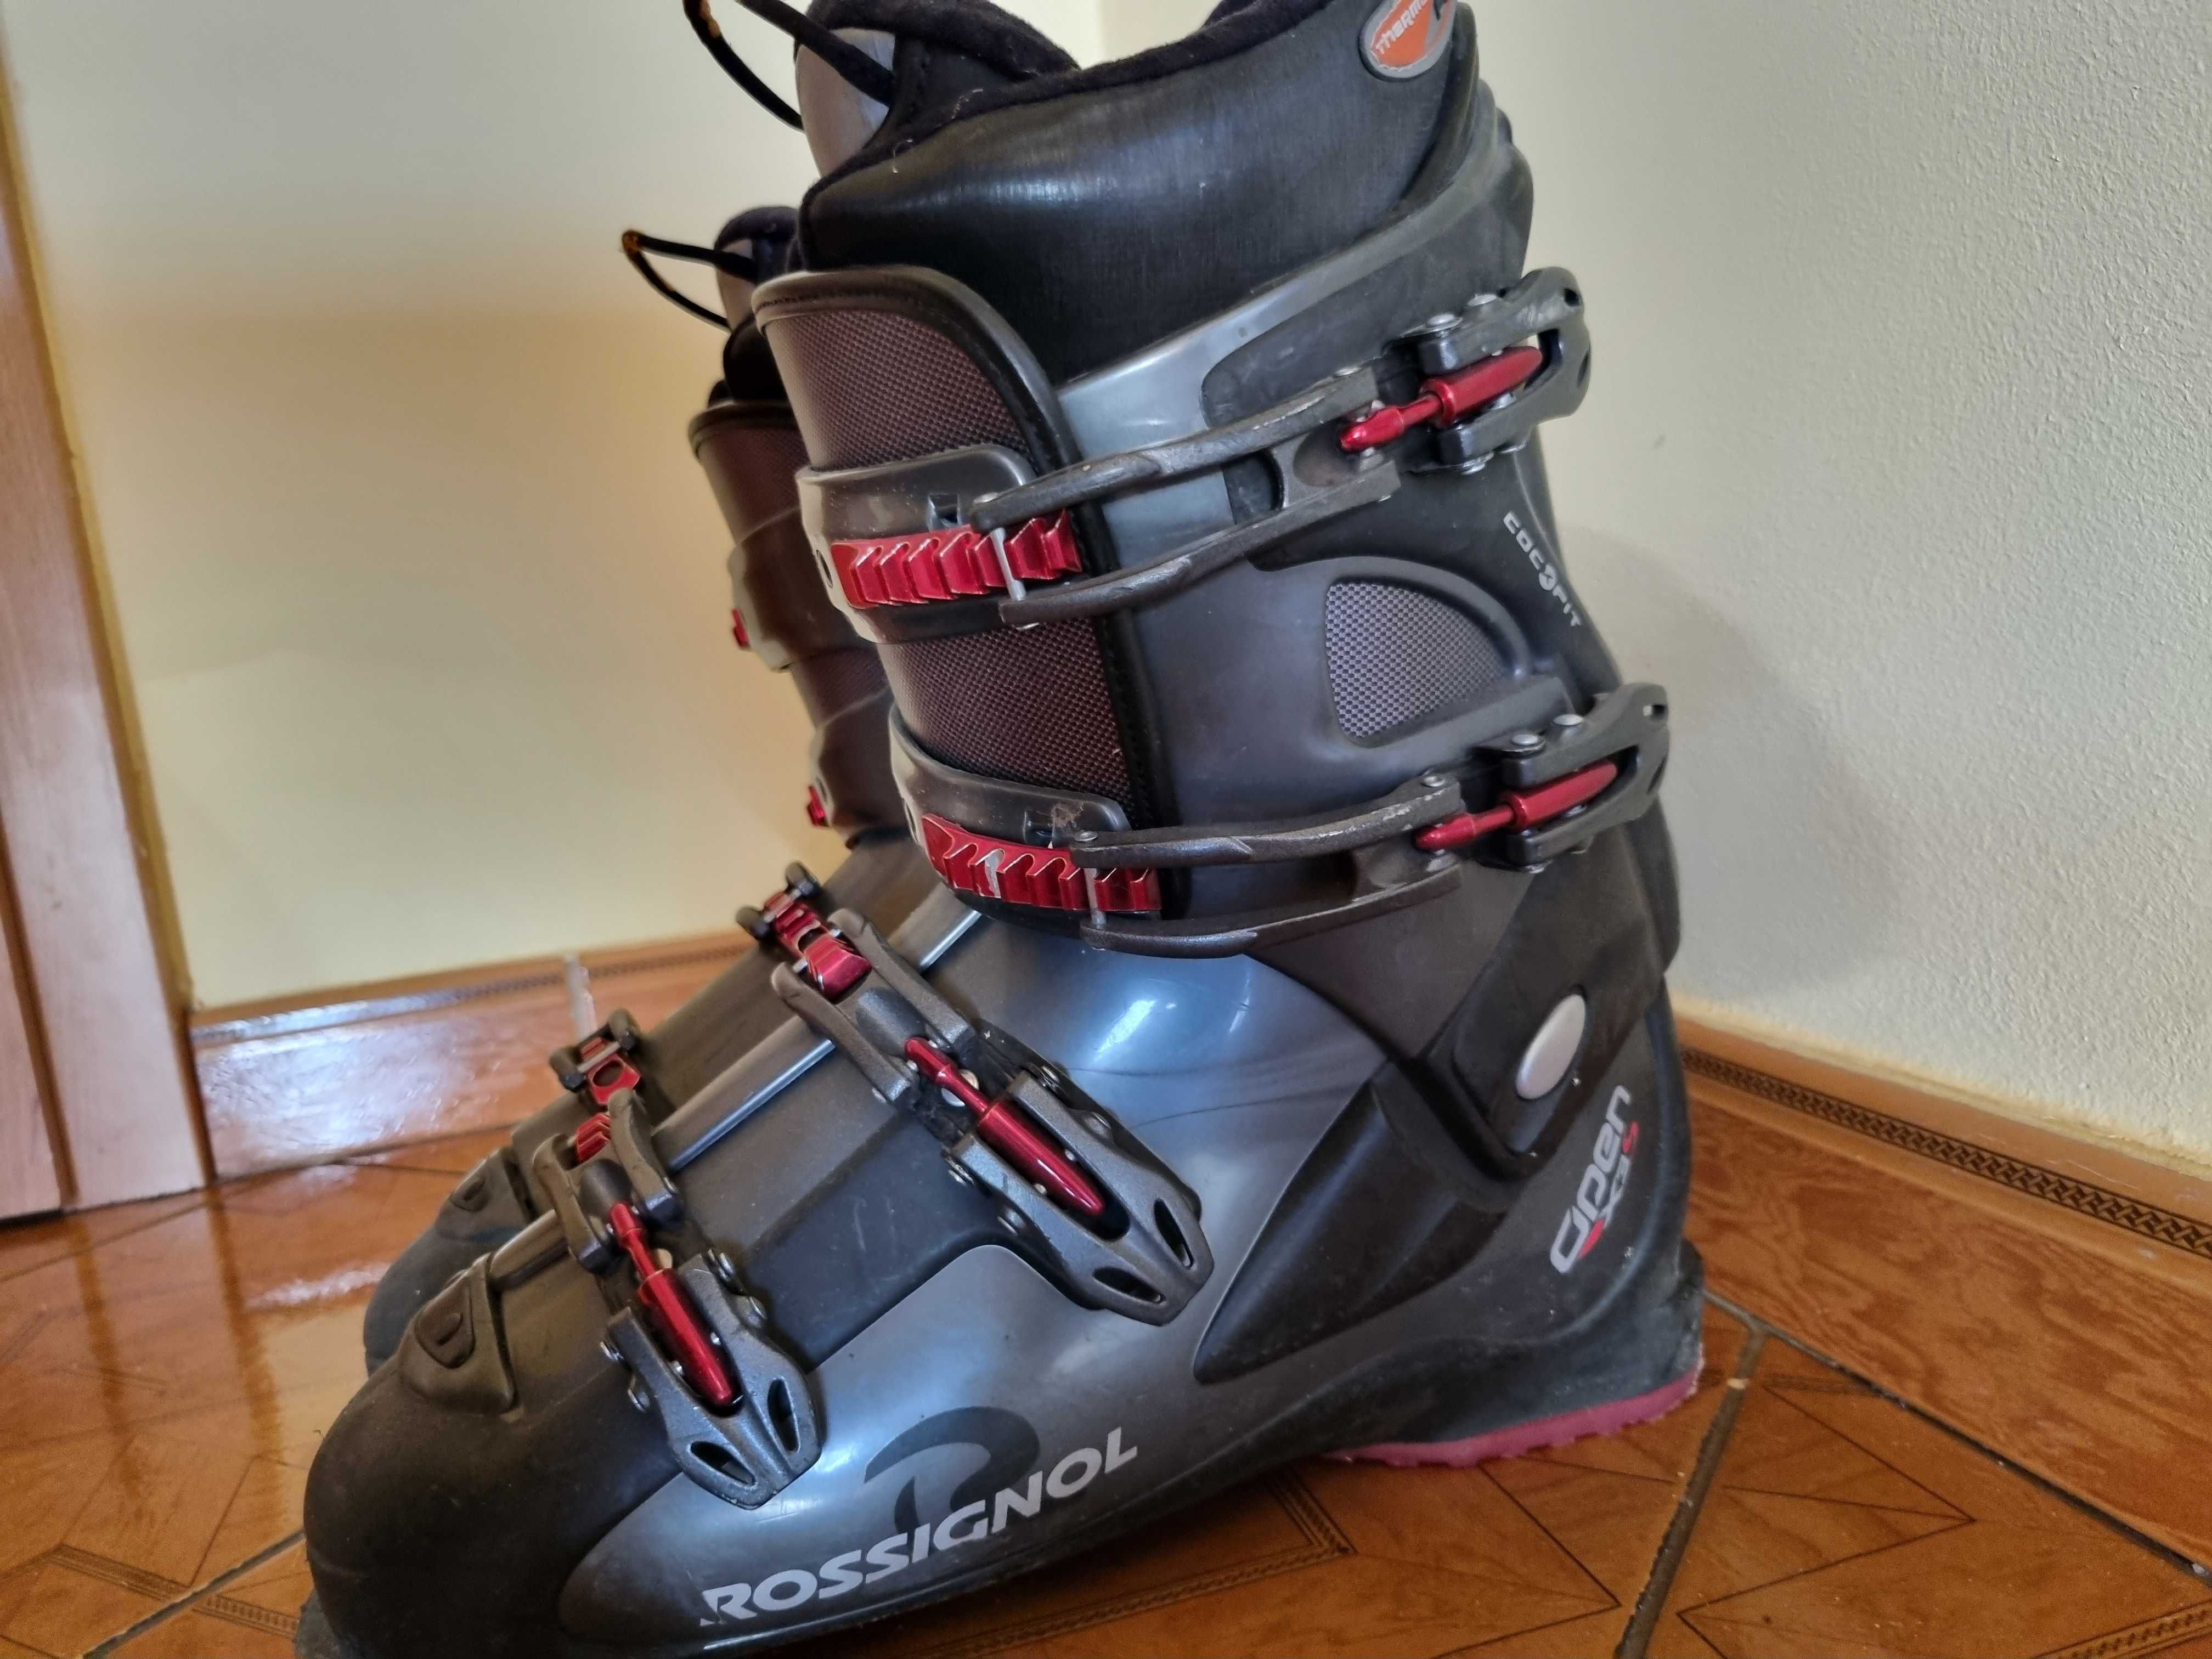 Narty Atomic 160 cm plus buty narciarskie Rossignol rozmiar 43